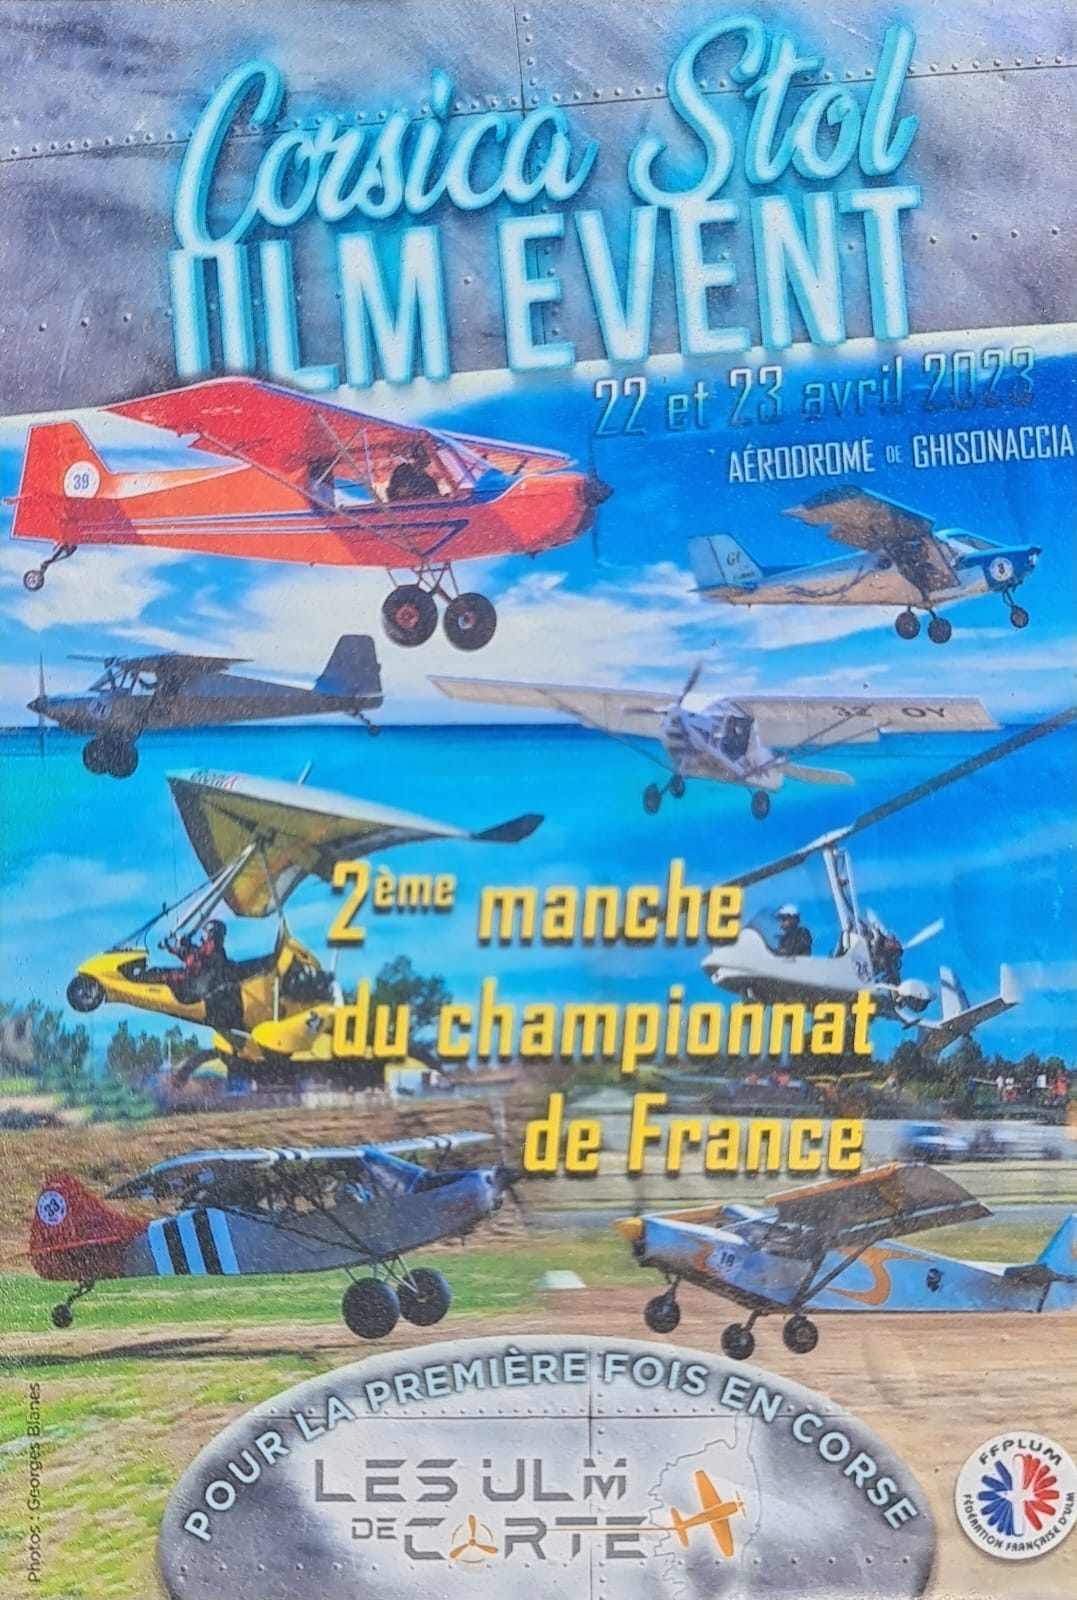 Corsica Stol ULM Event : les ULM vont tournoyer dans le ciel de Ghisonaccia